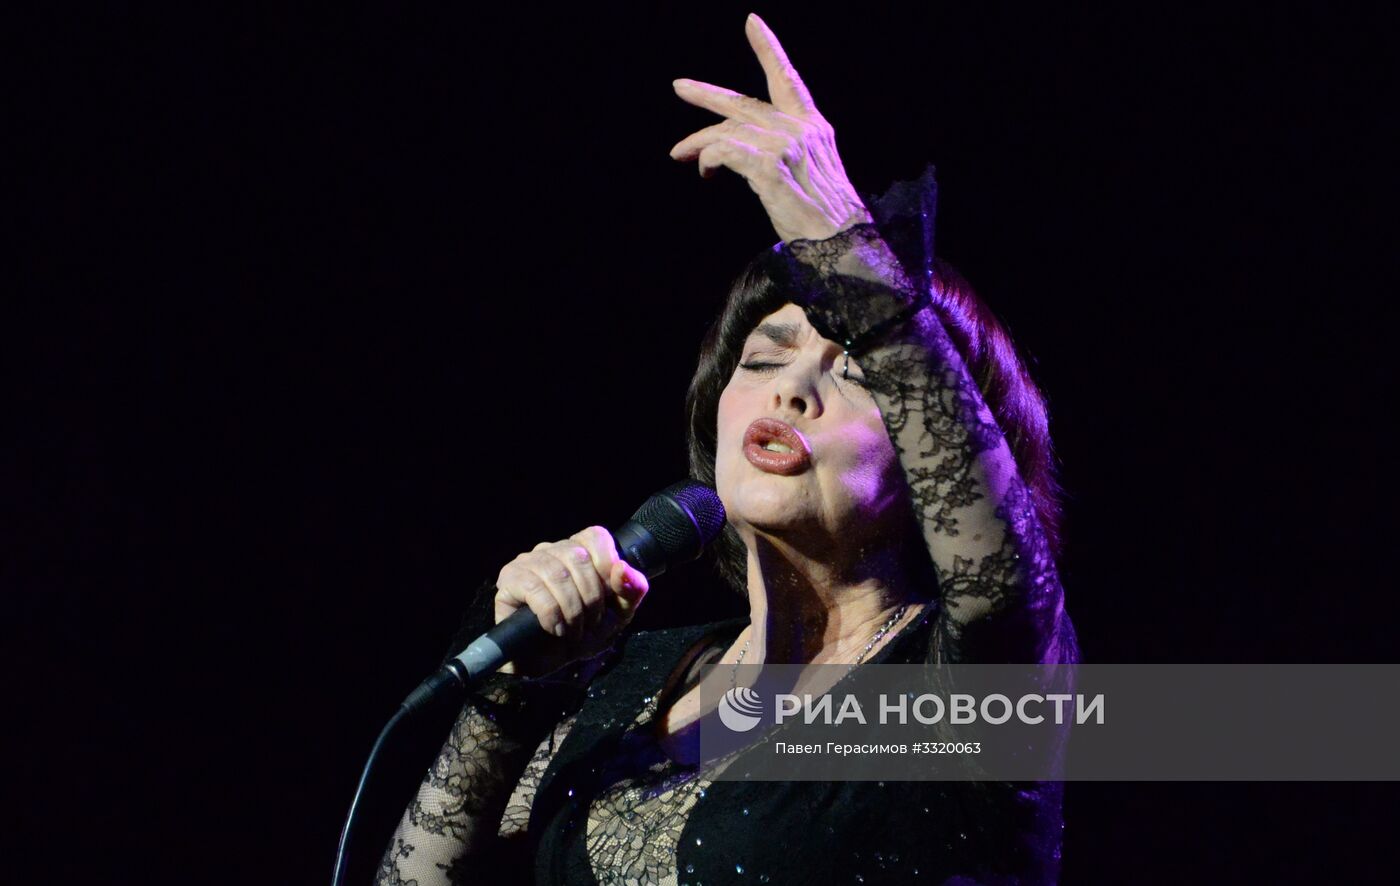 Концерт французской певицы Мирей Матьё в Москве